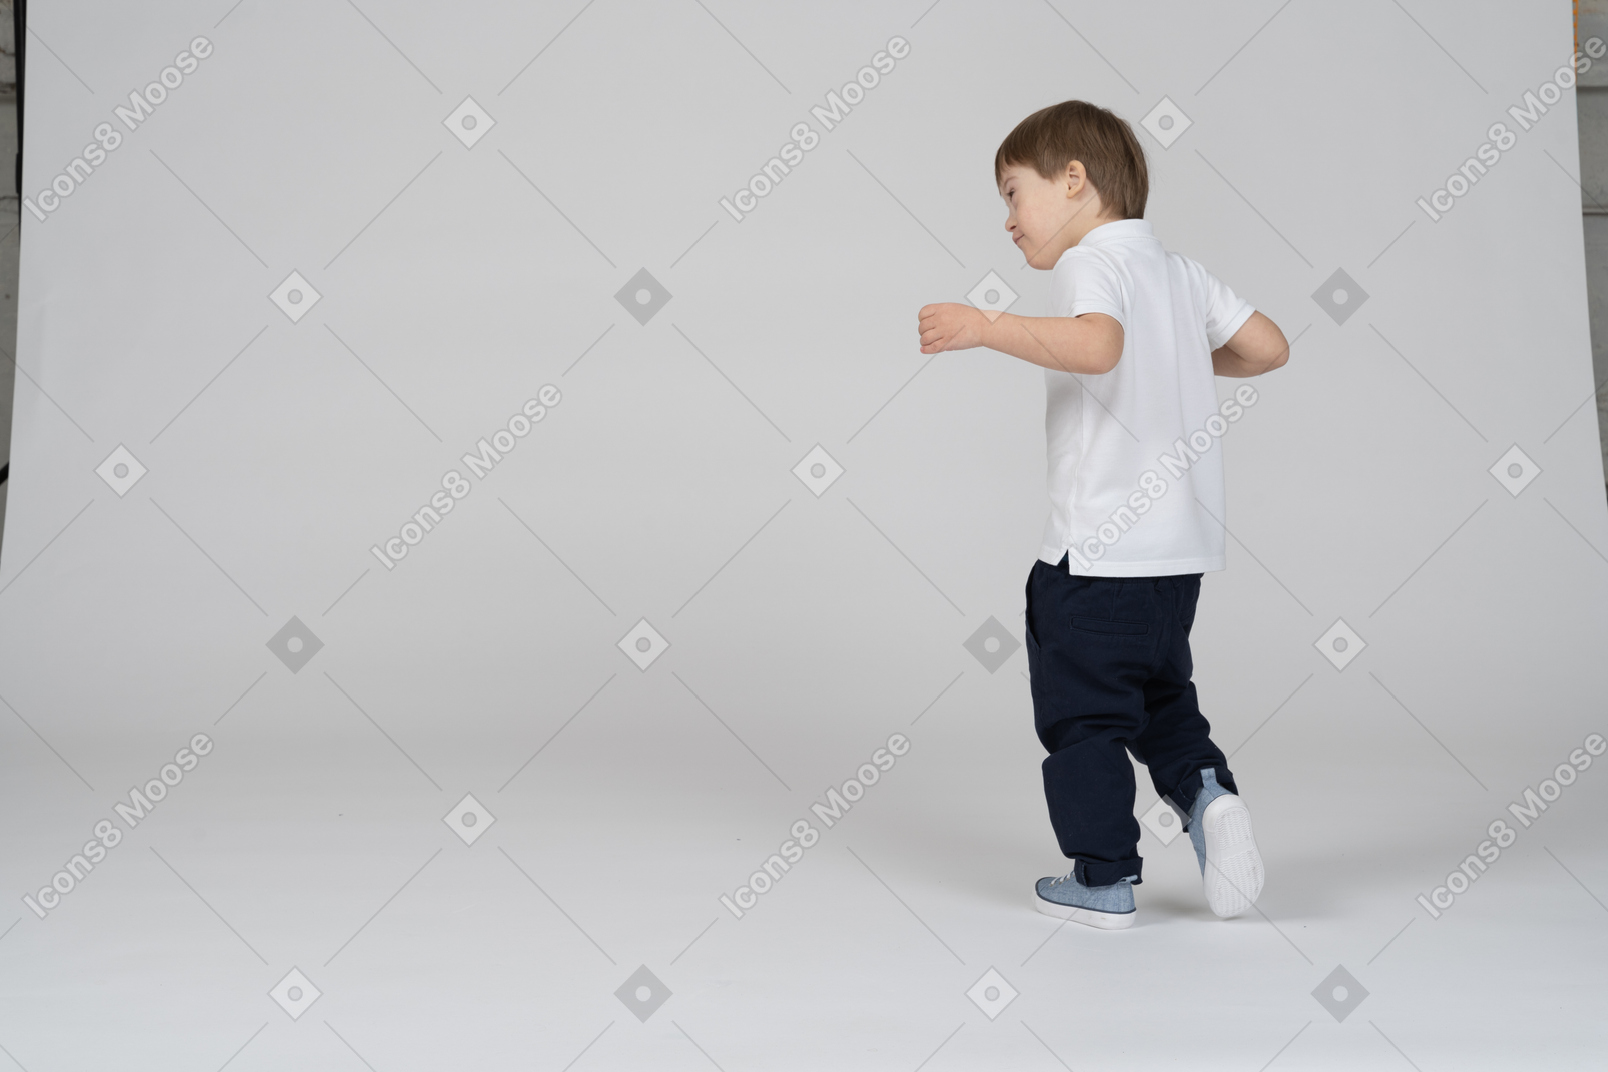 Вид сзади с поворотом в три четверти: мальчик делает шаг вперед со слегка поднятыми руками